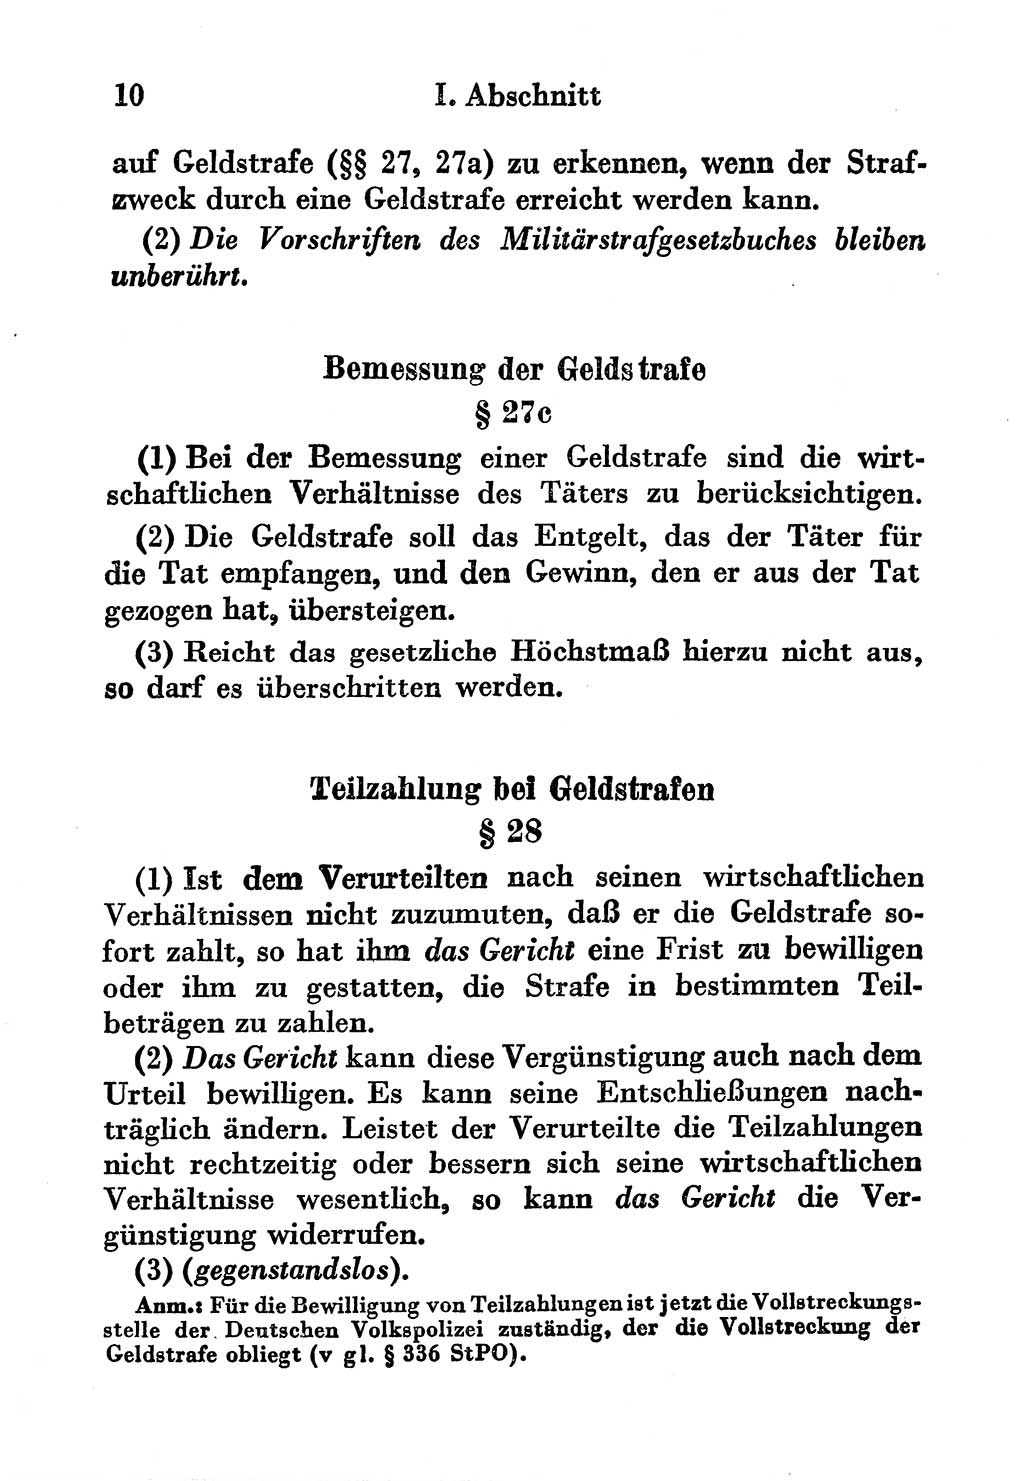 Strafgesetzbuch (StGB) und andere Strafgesetze [Deutsche Demokratische Republik (DDR)] 1956, Seite 10 (StGB Strafges. DDR 1956, S. 10)